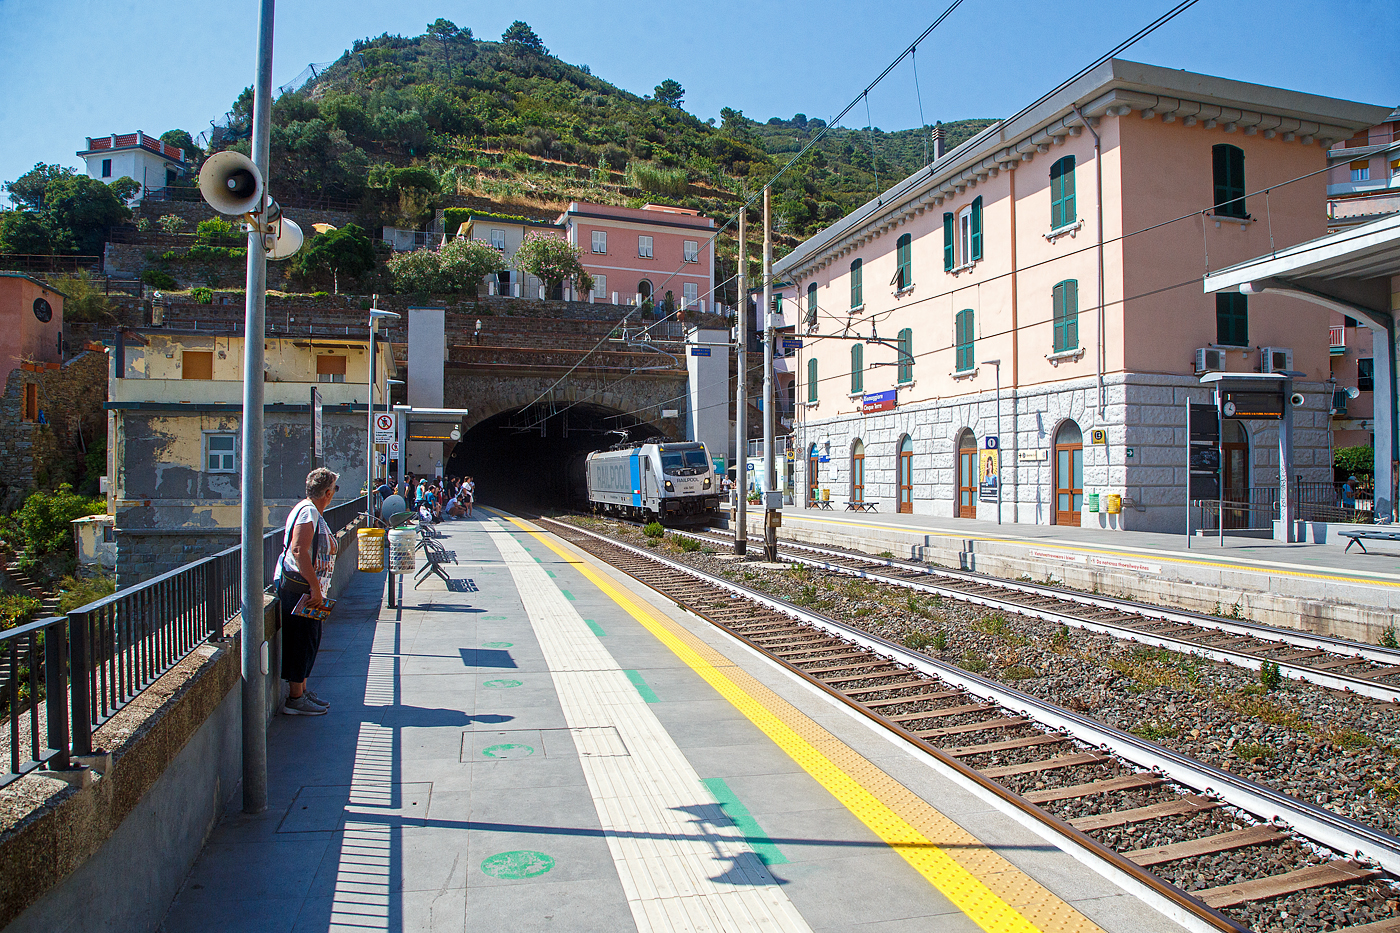 Die Railpool 494 580 (91 83 2494 580-0 I-RPOOL), eine Bombardier TRAXX F140 DC3 LM (mit Last-Mile-Modul), fährt am 22.07.2022 mit einem Kesselwagenzug durch den Bahnhof Riomaggiore (Cinque Terre) an der Italienischen Riviera in Richtung La Spezia bzw. Pisa. 

Riomaggiore ist das südlichste der fünf Dörfer der Cinque Terre (Fünf Ortschaften) und verfügt, wie die anderen Dörfer, über eine Eisenbahnstation an der Bahnstrecke Pisa–Genua (RFI Strecke-Nr. 77 / KBS 31 La Spezia–Genua), die den Ort mit den Nachbardörfern und mit La Spezia und Levanto verbindet. 